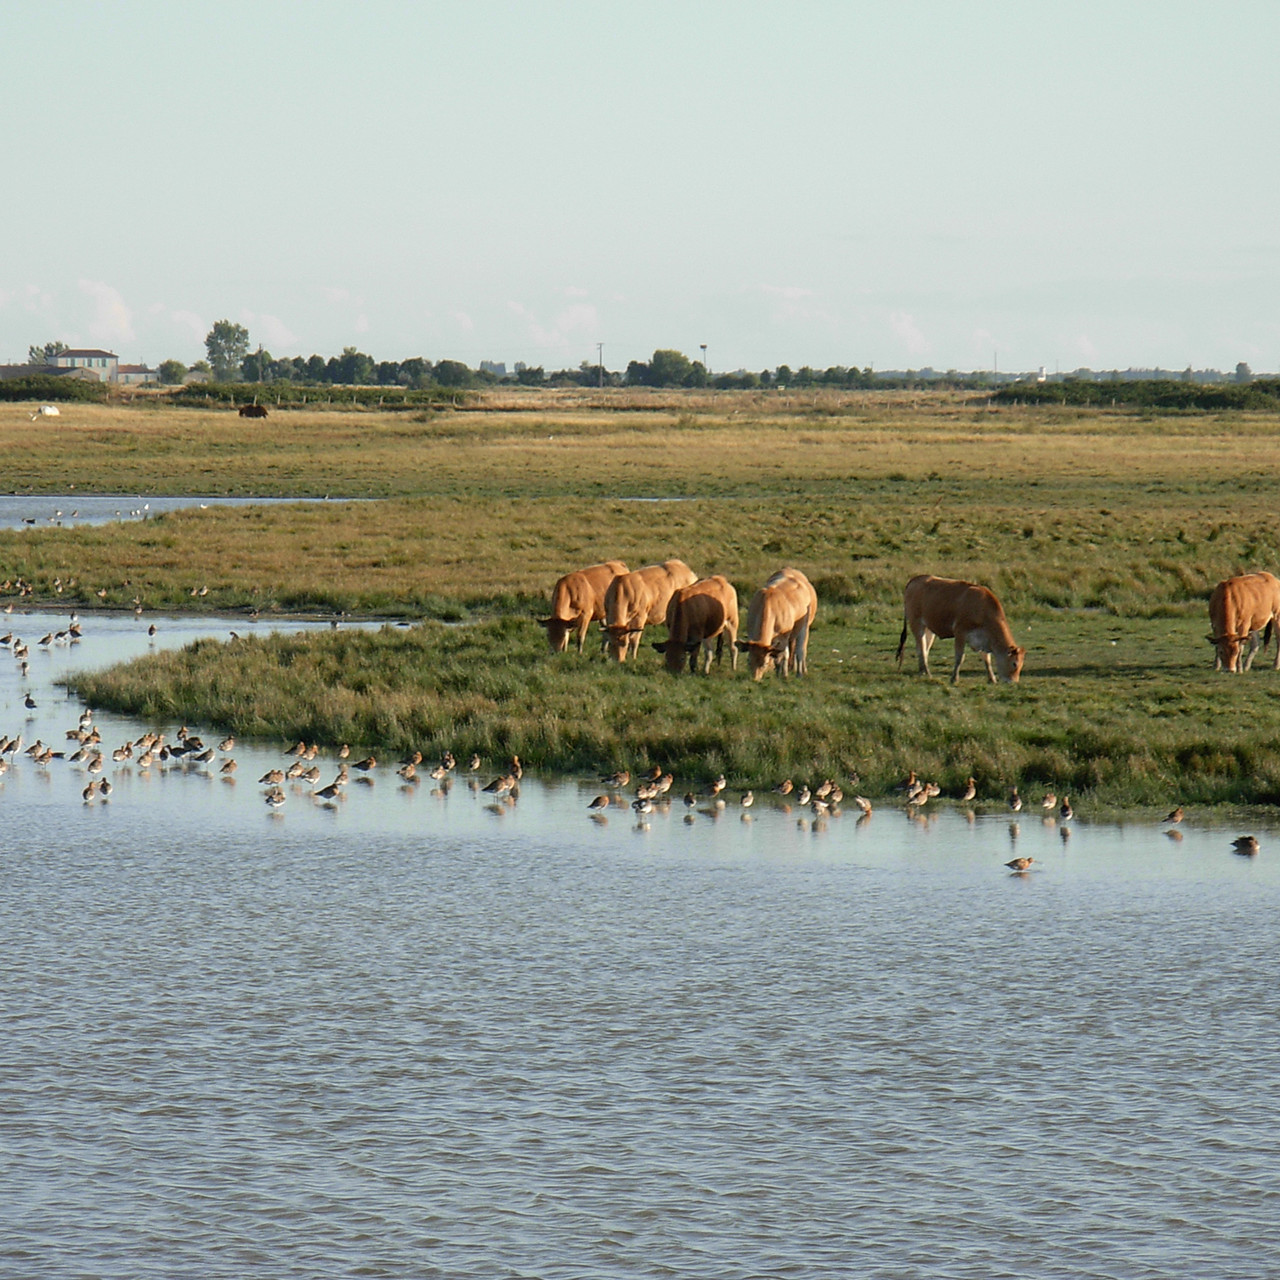 Vaches paissant dans les prairies du marais desséché, paysage du Marais poitevin